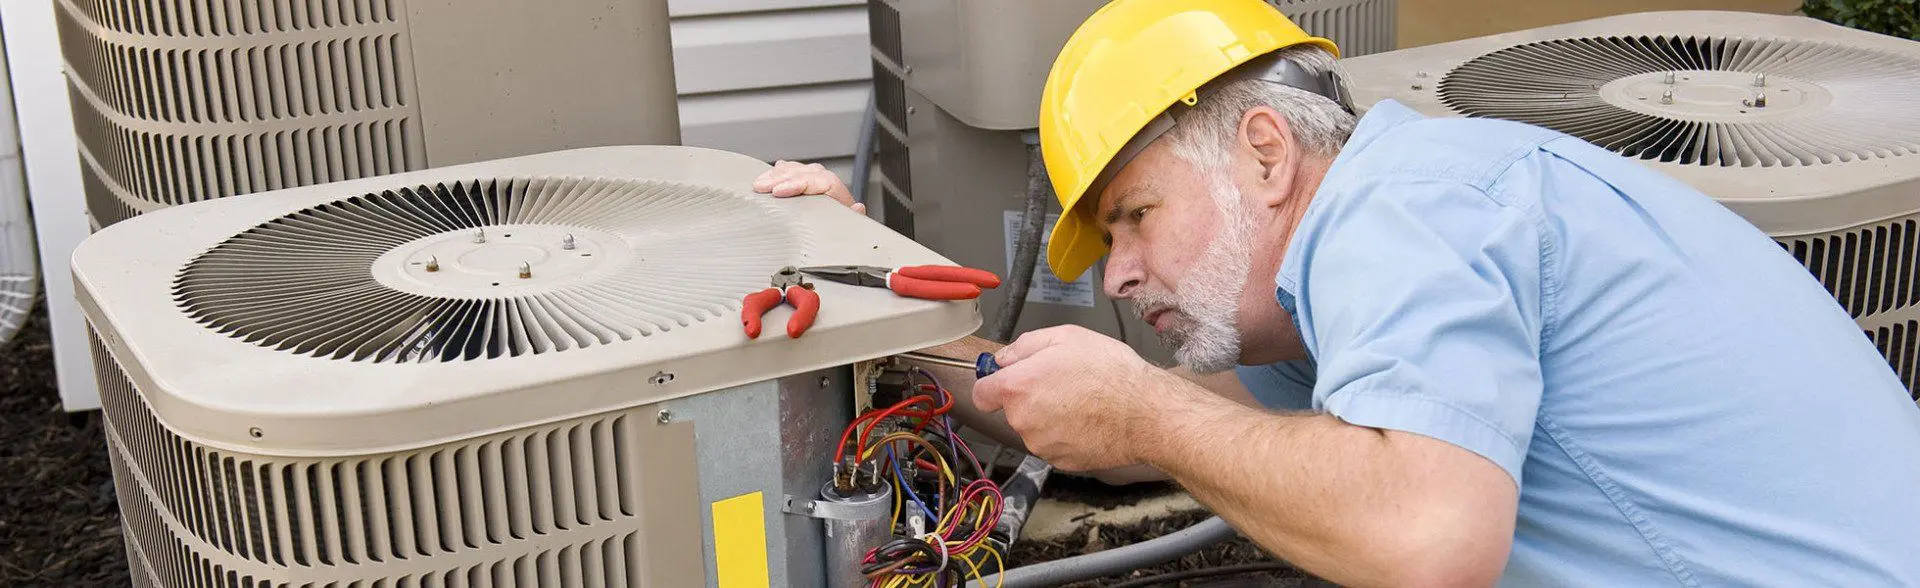 A man fixing a fan